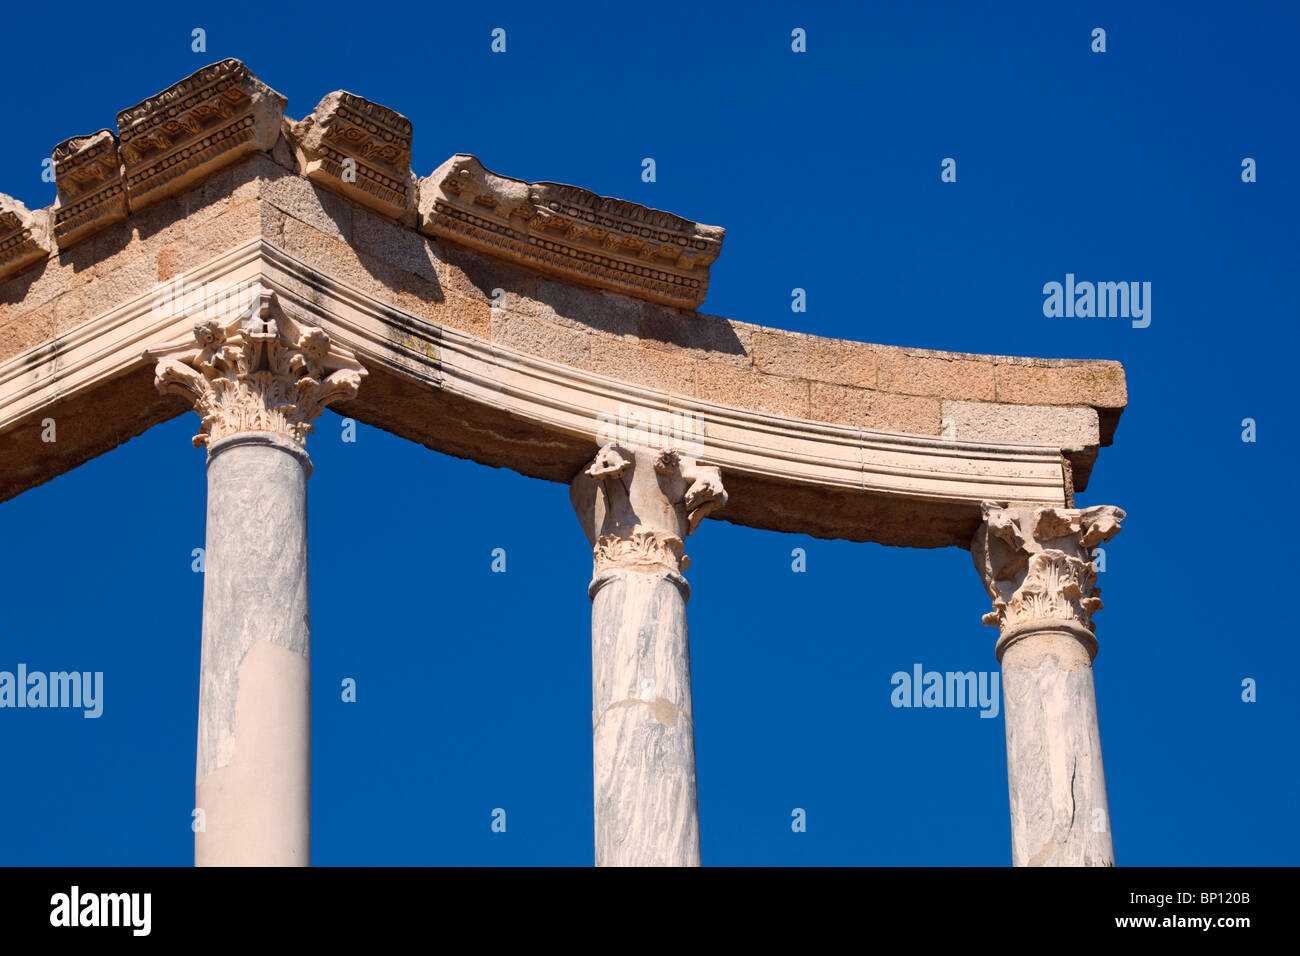 Mérida, provincia de Badajoz, España. El teatro romano, construido en el primer siglo A.C. Detalle del colonnade detrás del escenario. Foto de stock